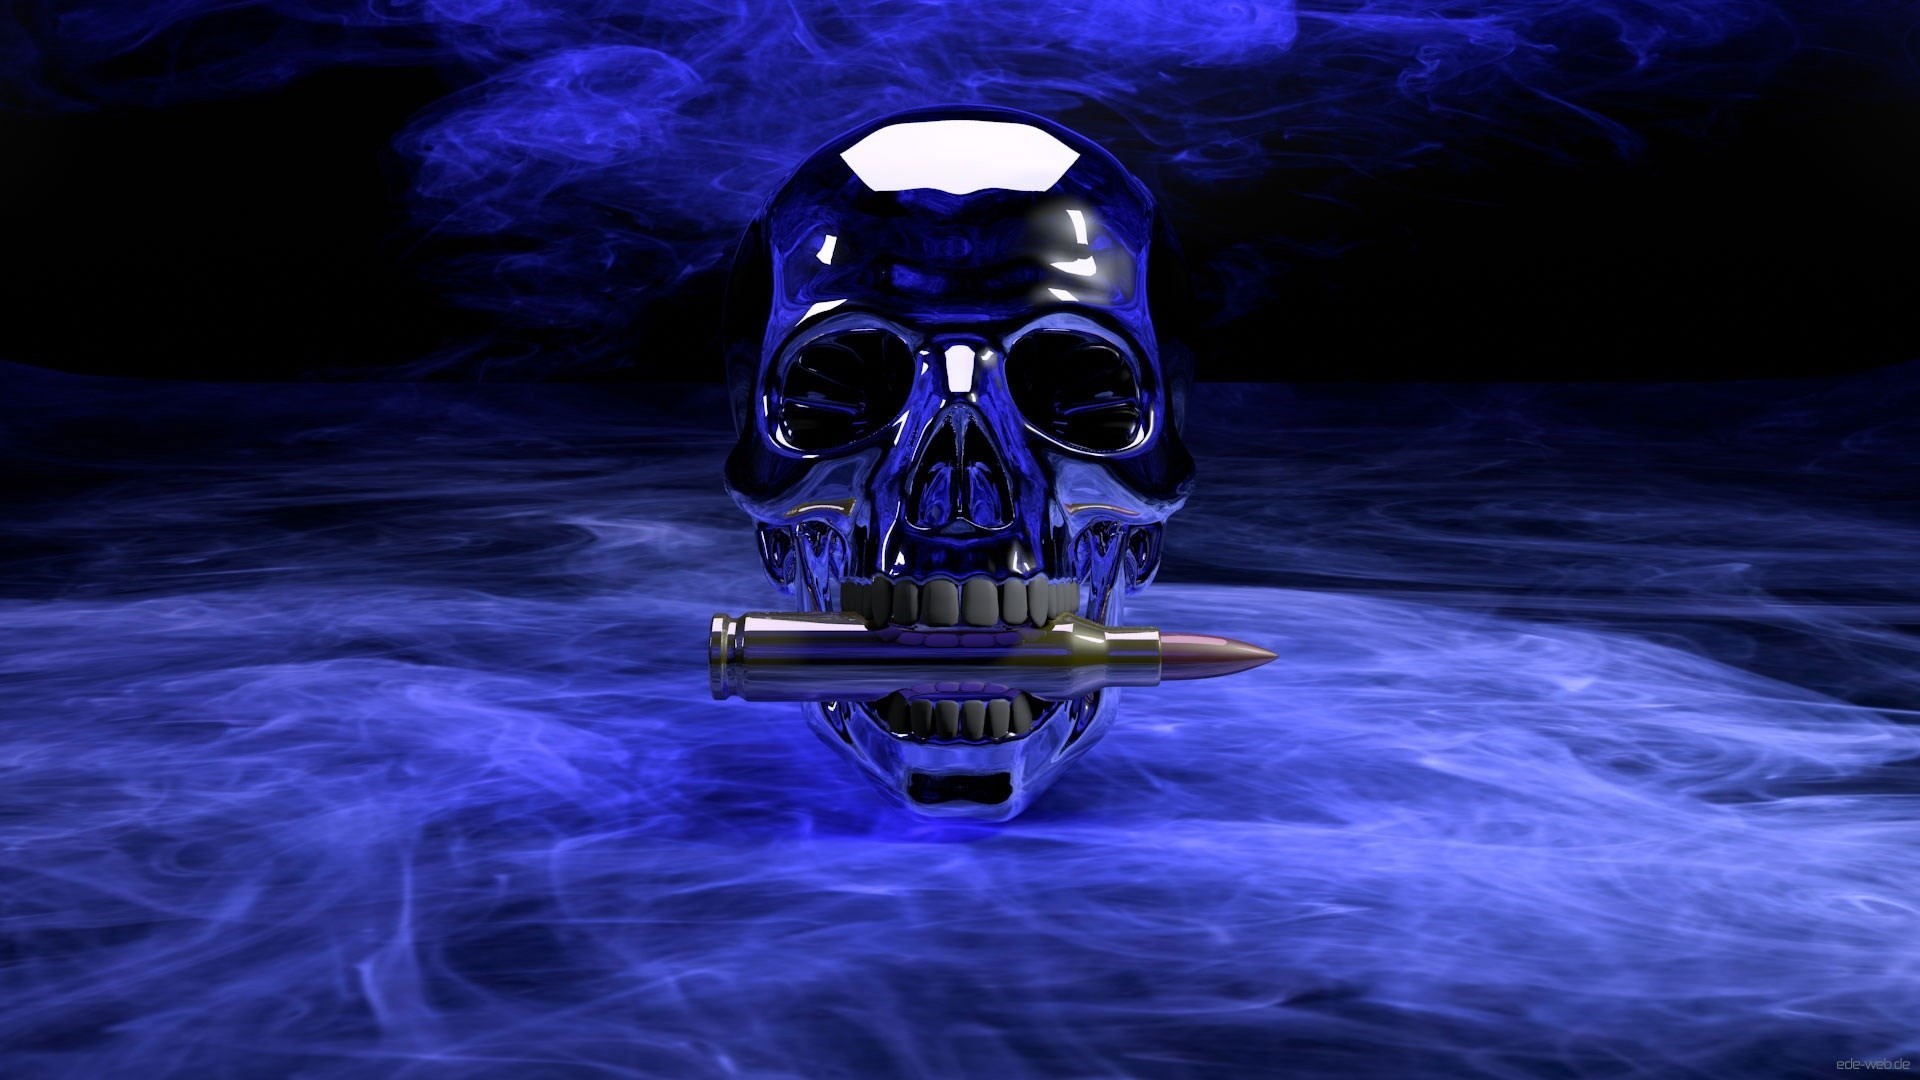 crâne fond d'écran 1920x1080,crâne,oeuvre de cg,bleu électrique,équipement de protection individuelle,personnage fictif